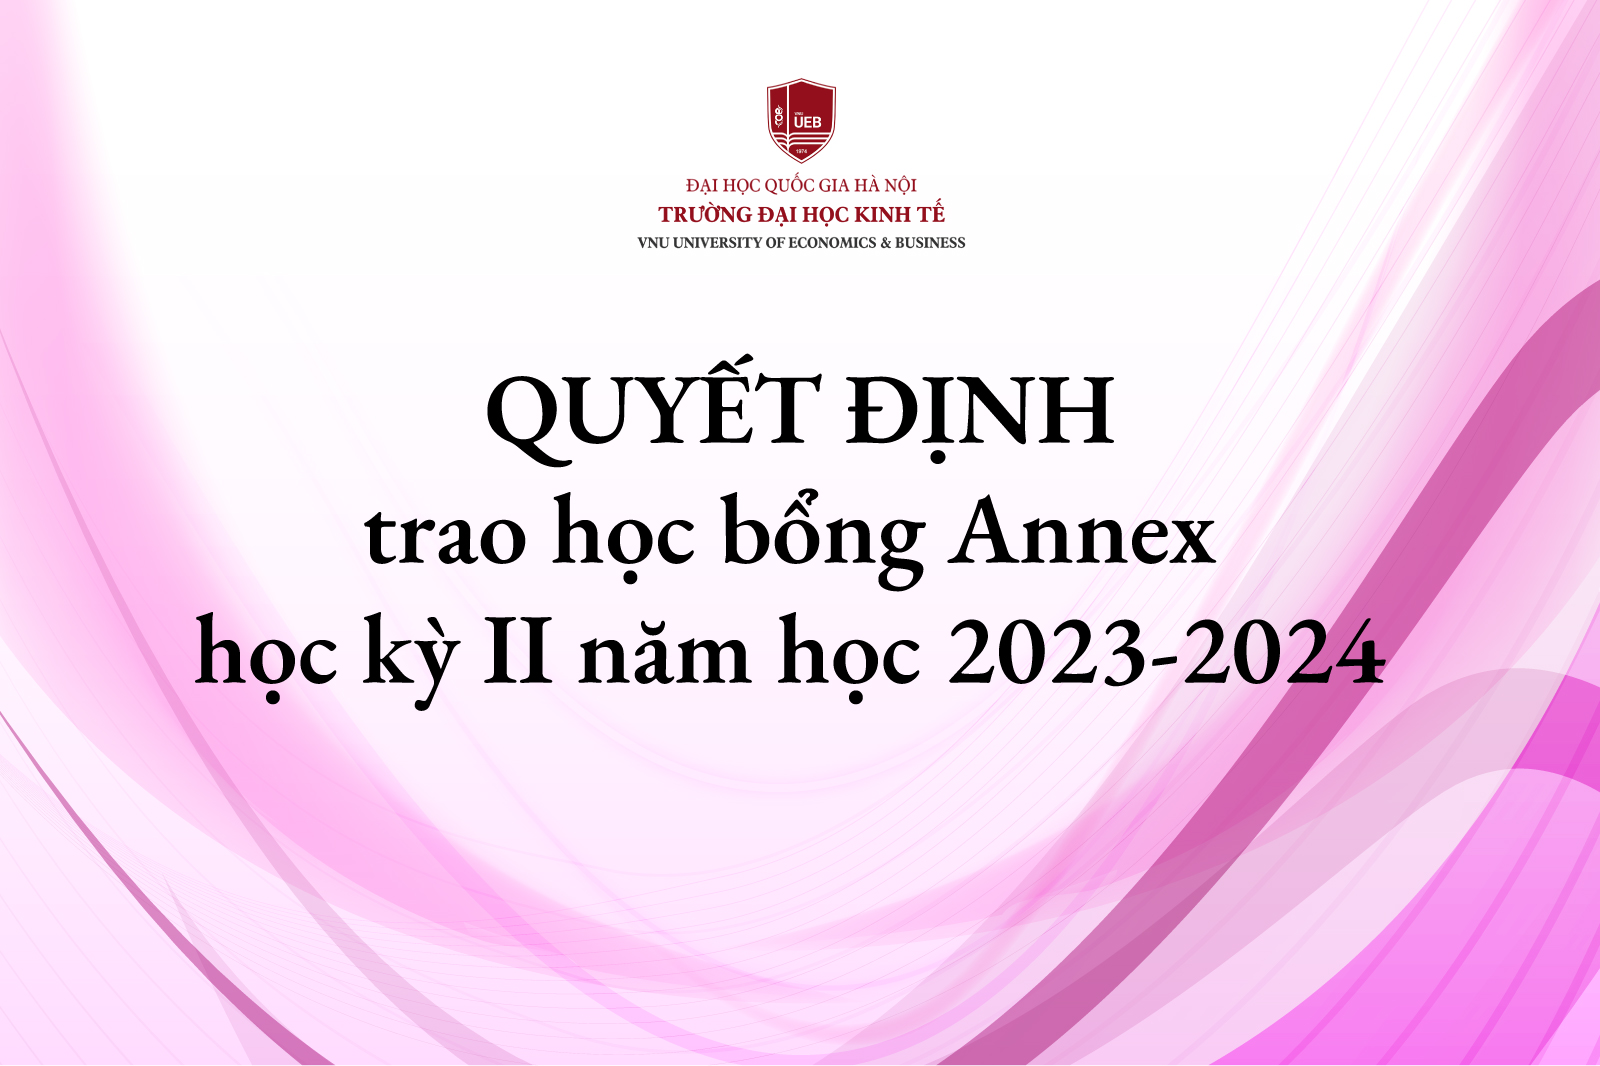 Quyết định trao học bổng Annex học kỳ II năm học 2023 - 2024